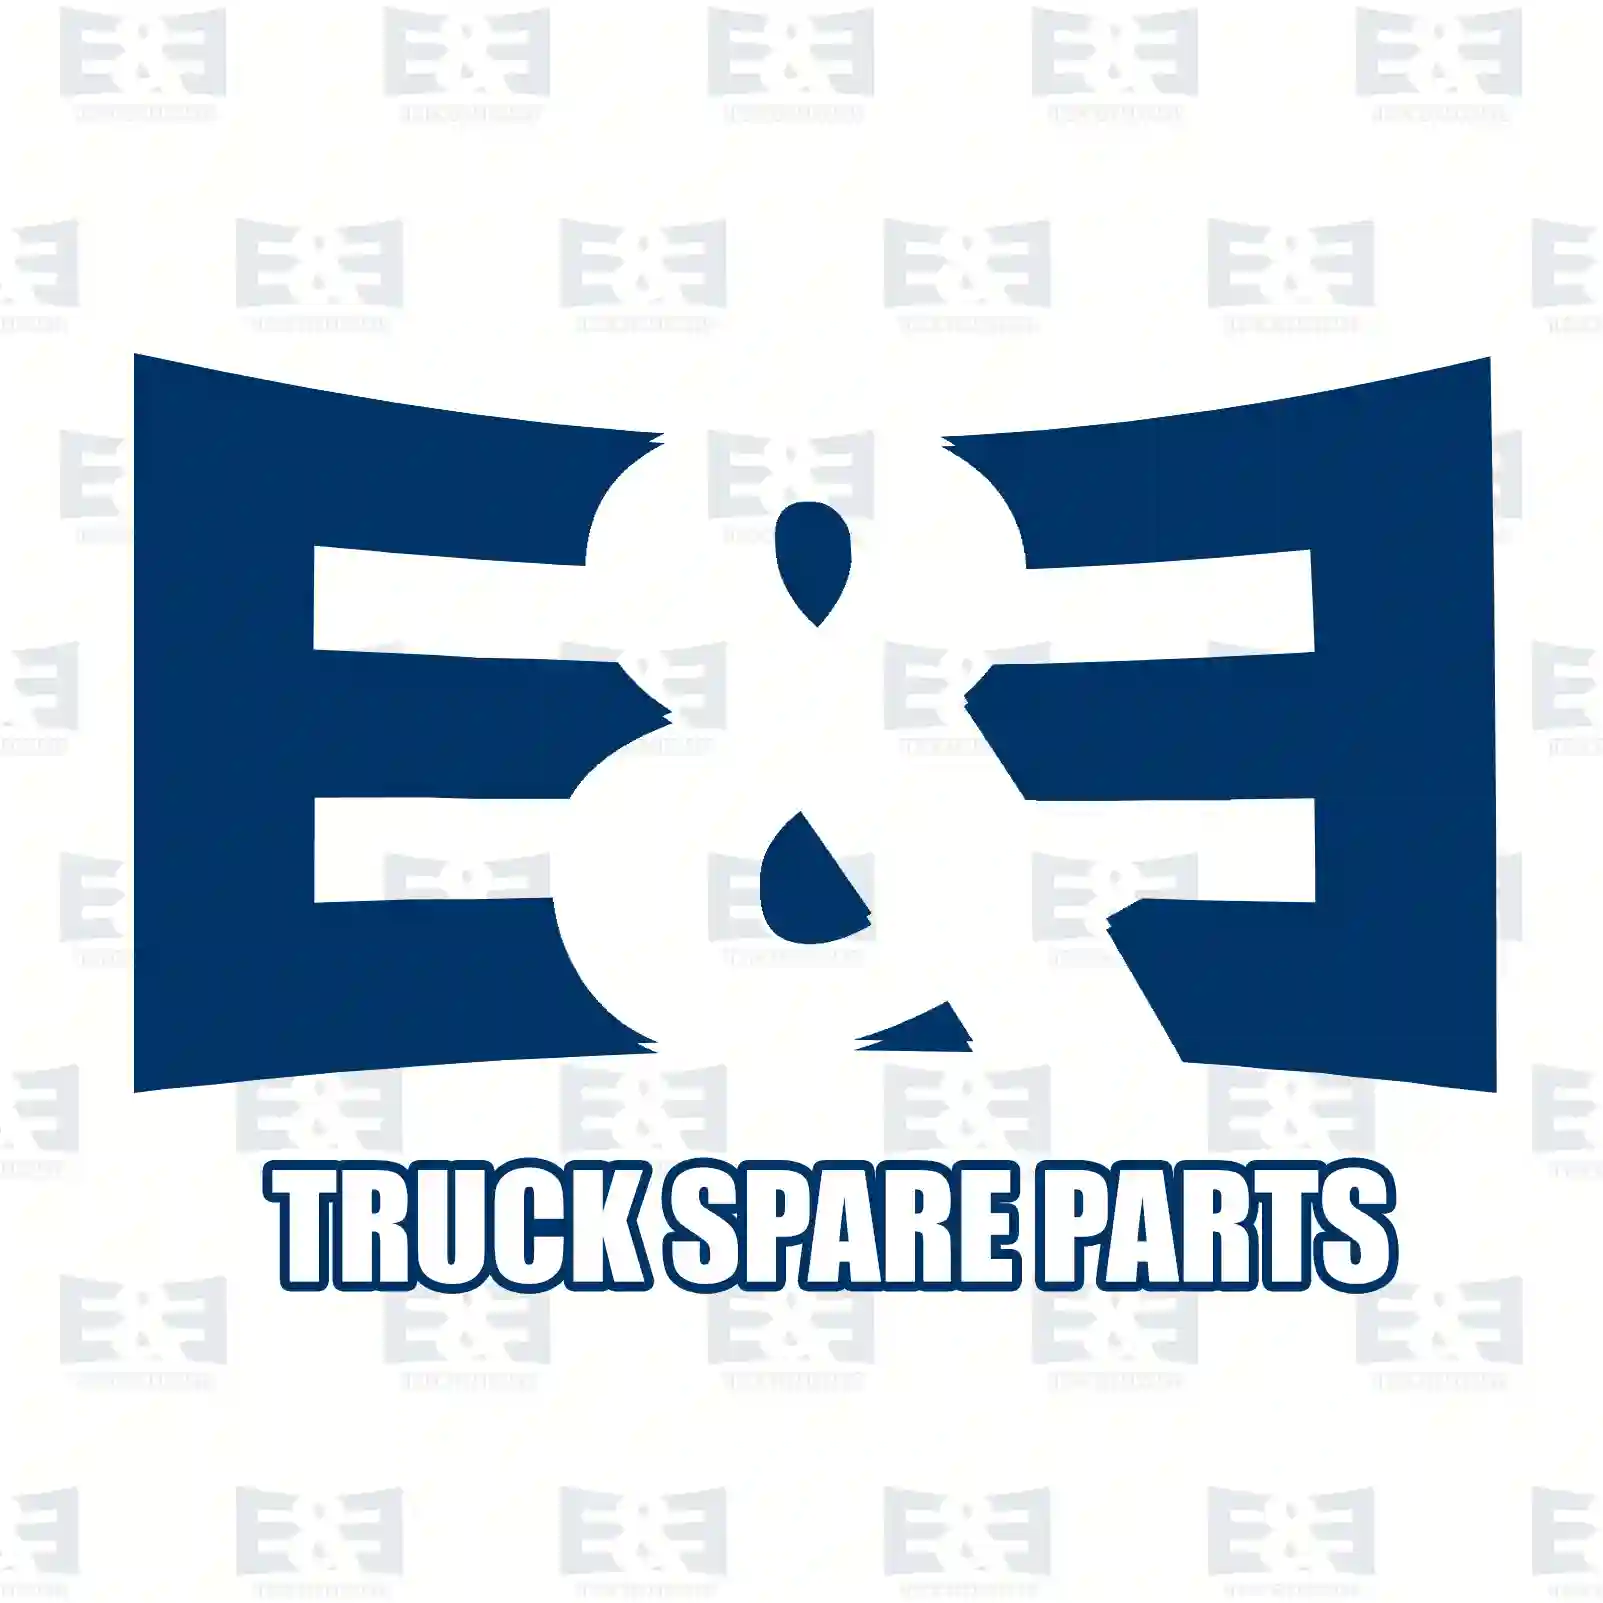 Brake disc, 2E2295018, 6884230012, 6884230212, , , , , , , , ||  2E2295018 E&E Truck Spare Parts | Truck Spare Parts, Auotomotive Spare Parts Brake disc, 2E2295018, 6884230012, 6884230212, , , , , , , , ||  2E2295018 E&E Truck Spare Parts | Truck Spare Parts, Auotomotive Spare Parts